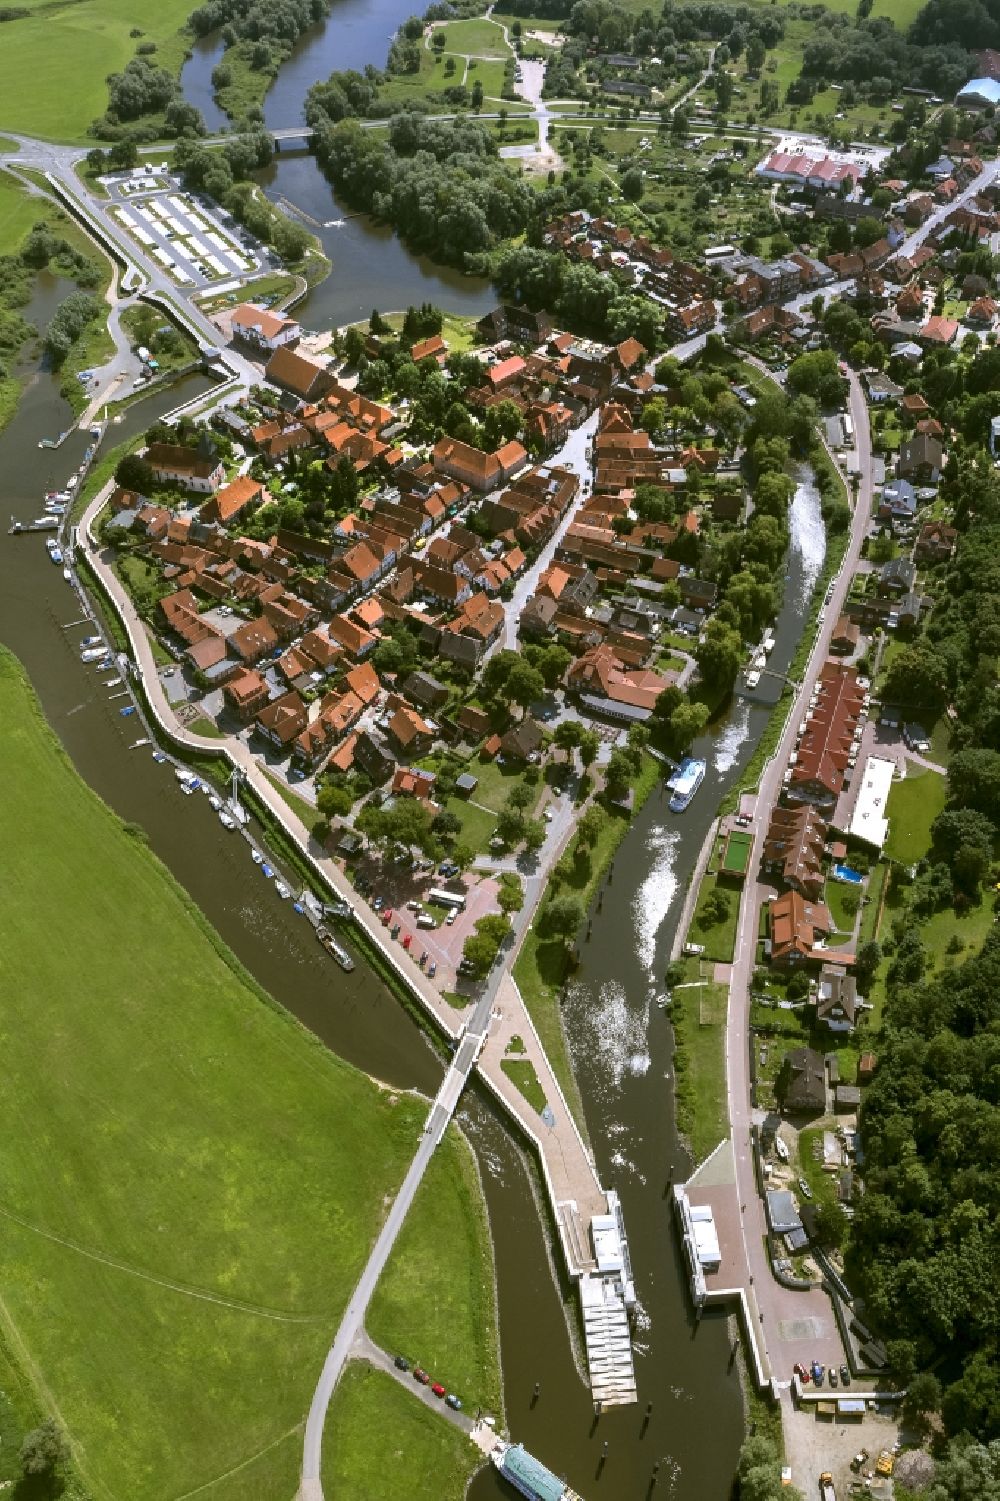 Hitzacker from above - City view of Hitzacker in Lower Saxony